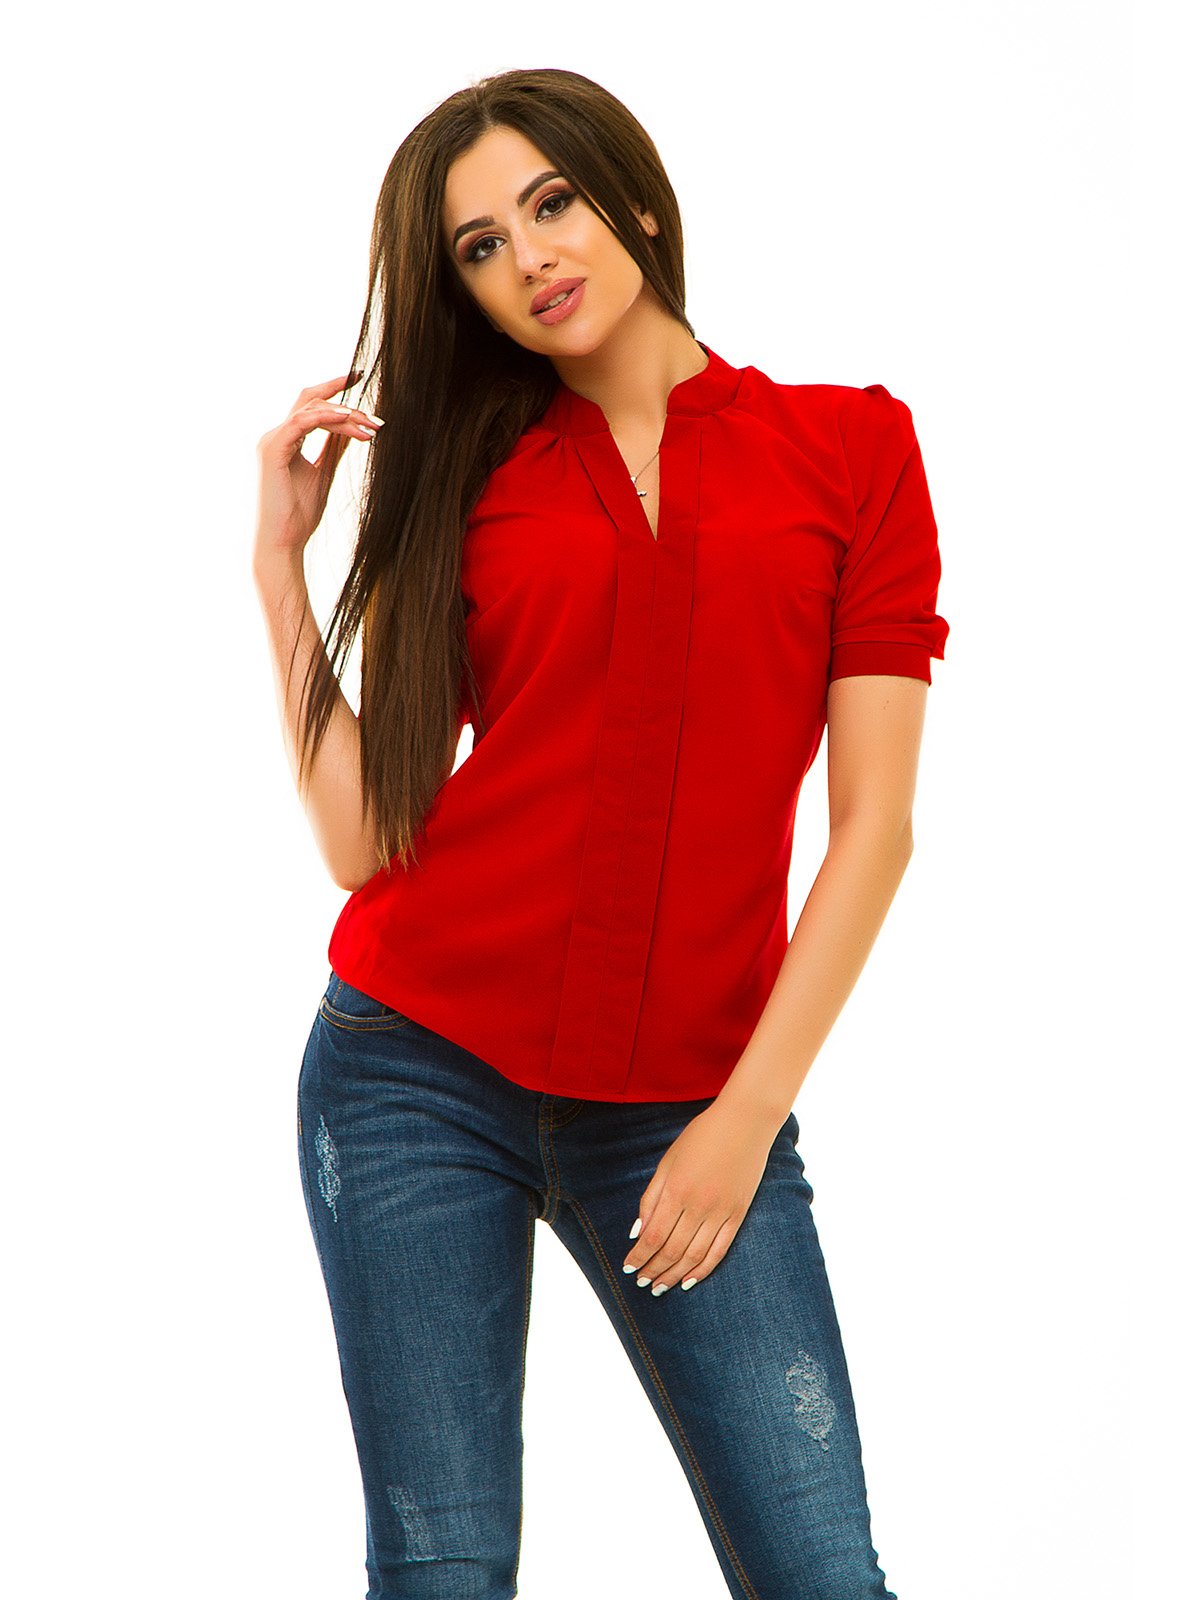 Красные блузки женская. Красная блуза. Красные кофточки женские. Женщина в красной блузке. Красная блуза для женщин.